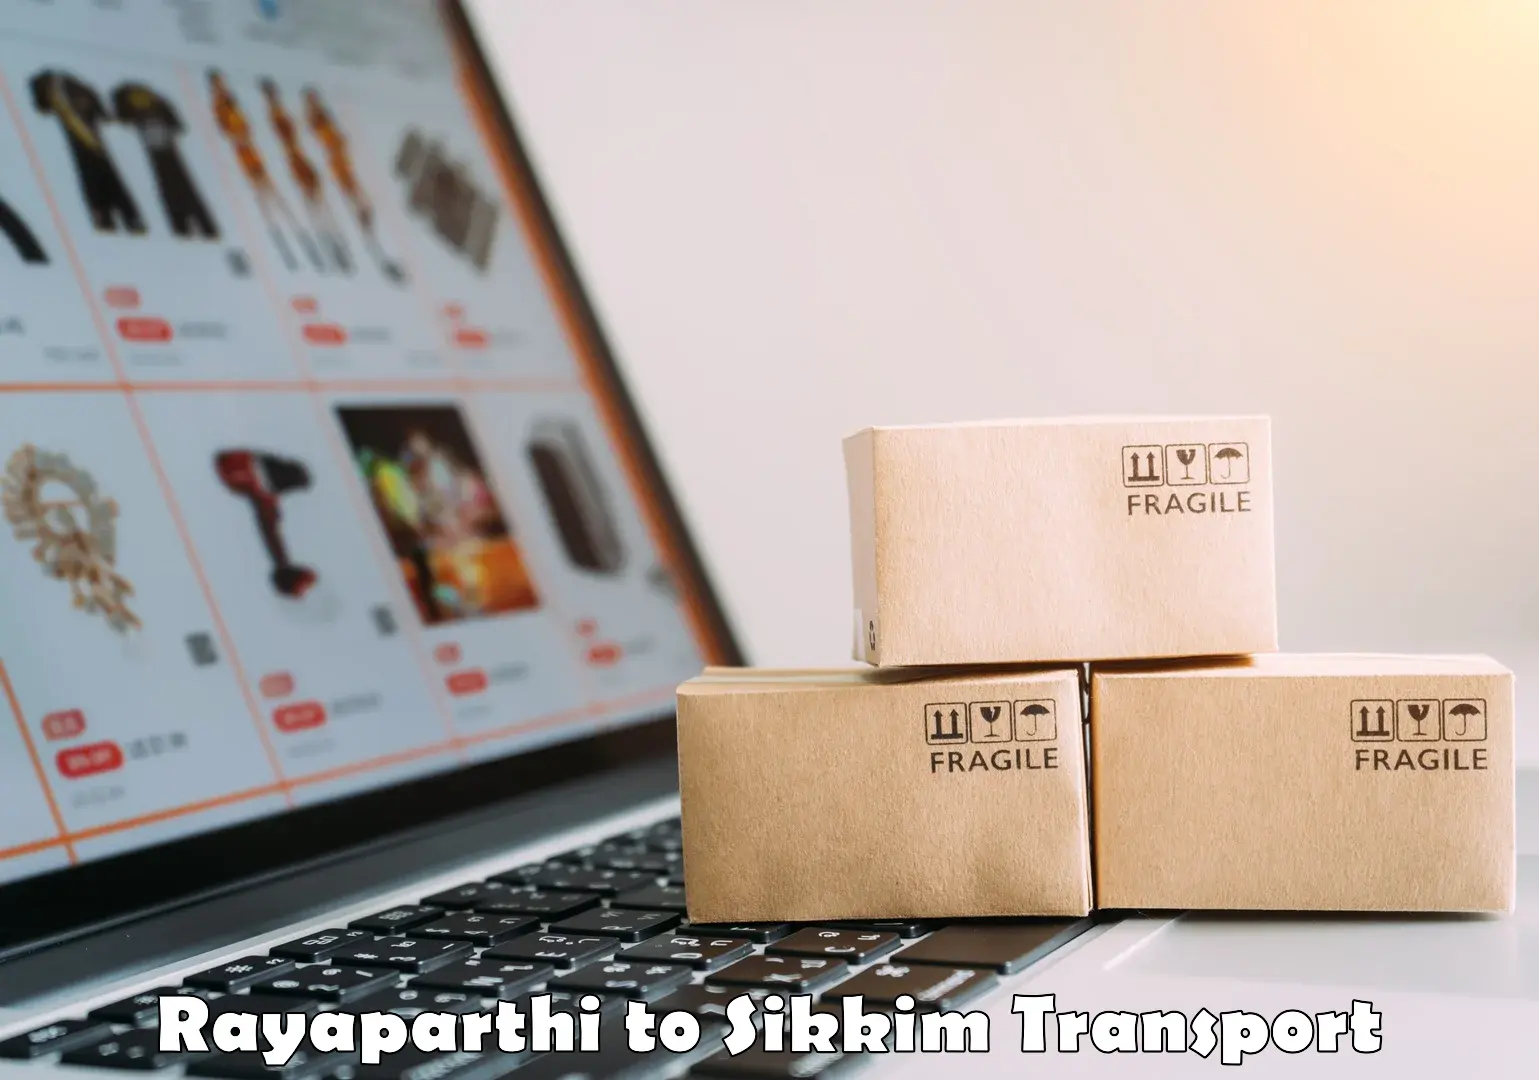 Vehicle parcel service Rayaparthi to Jorethang